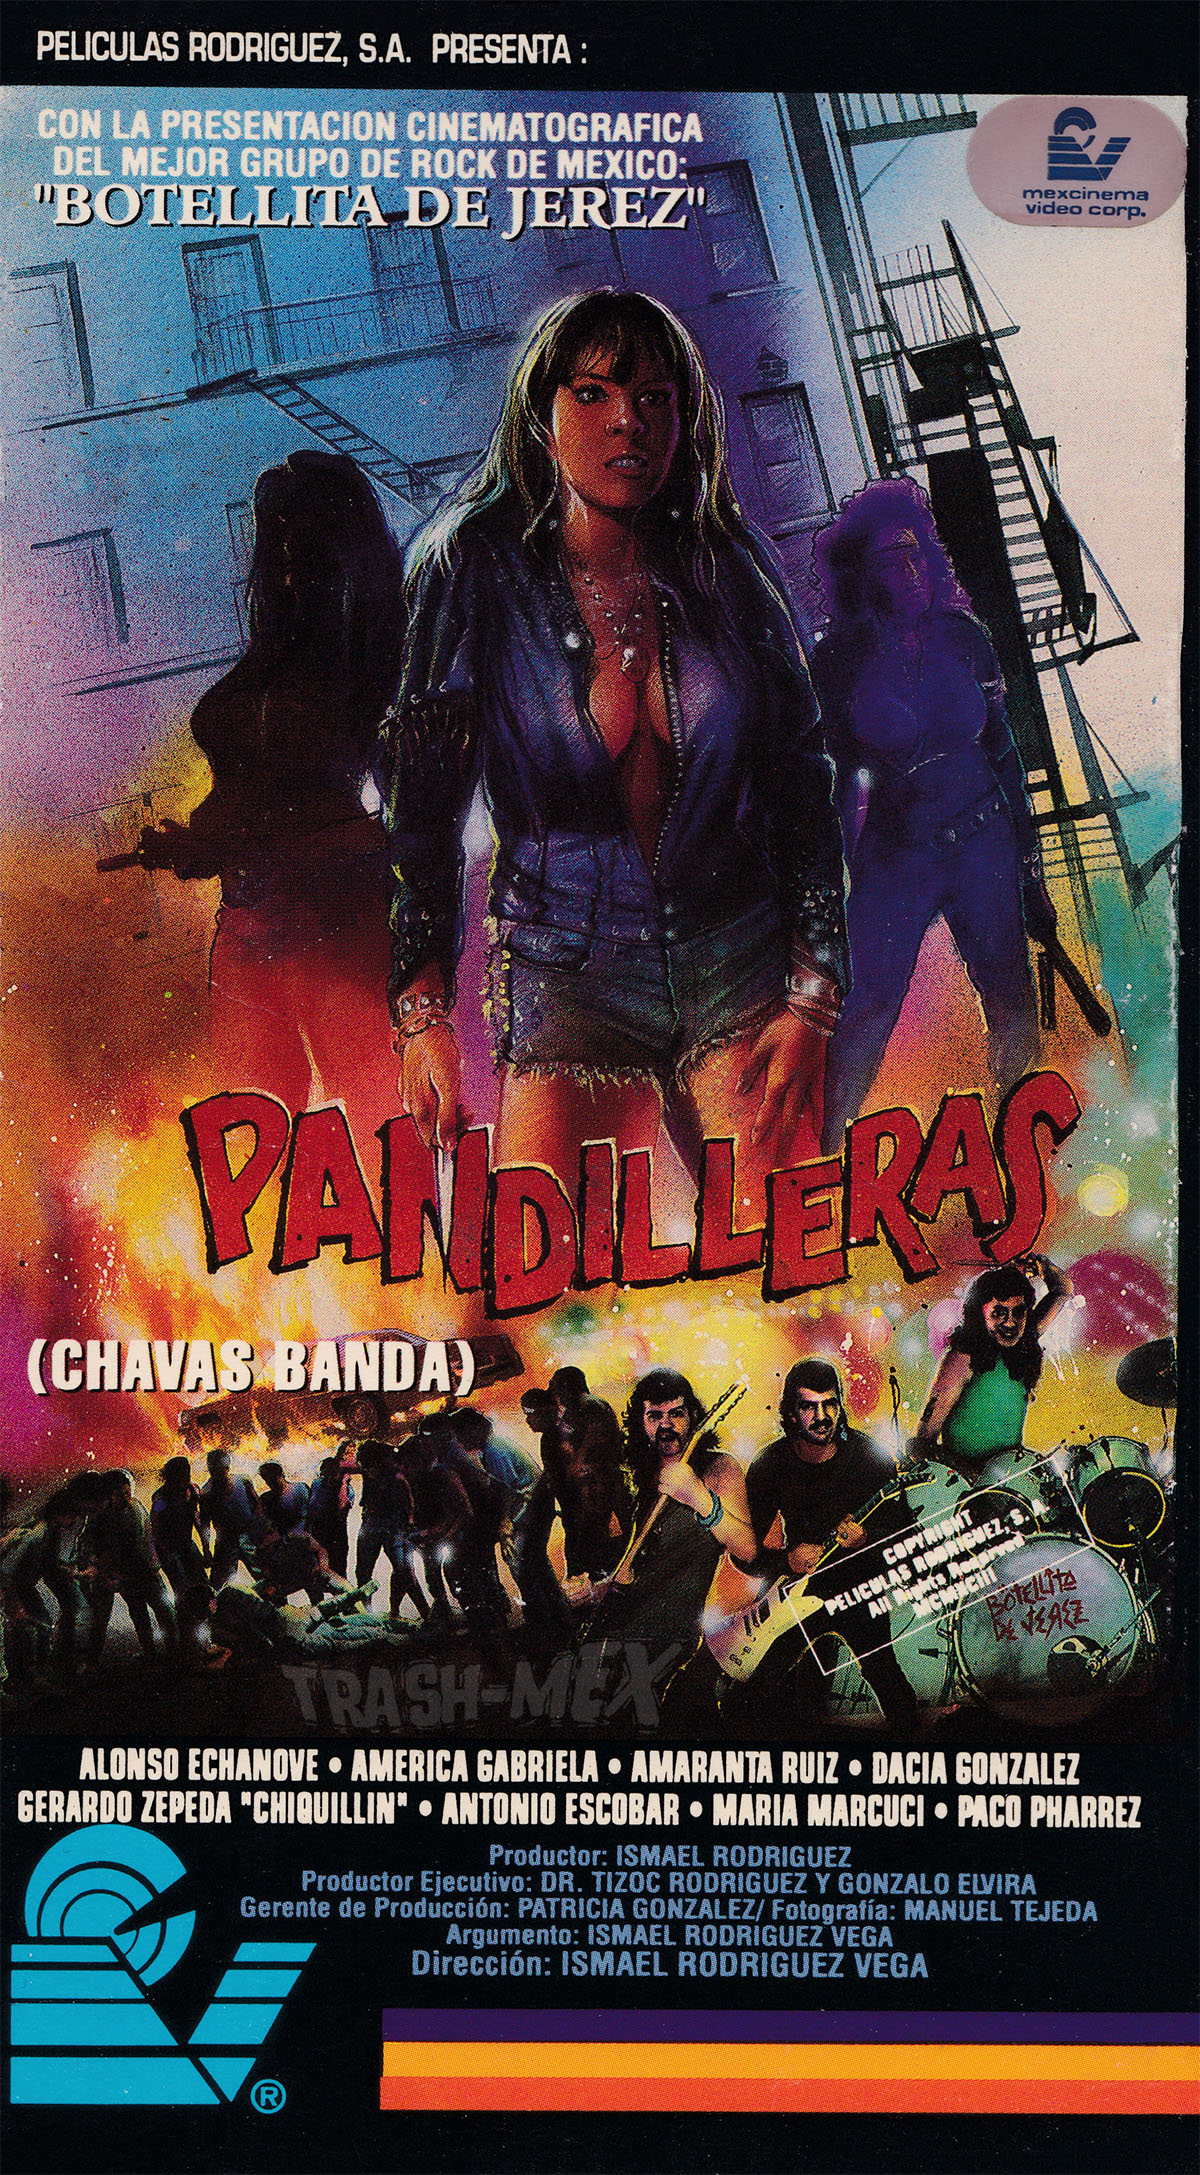 Pandilleras (1994) Screenshot 1